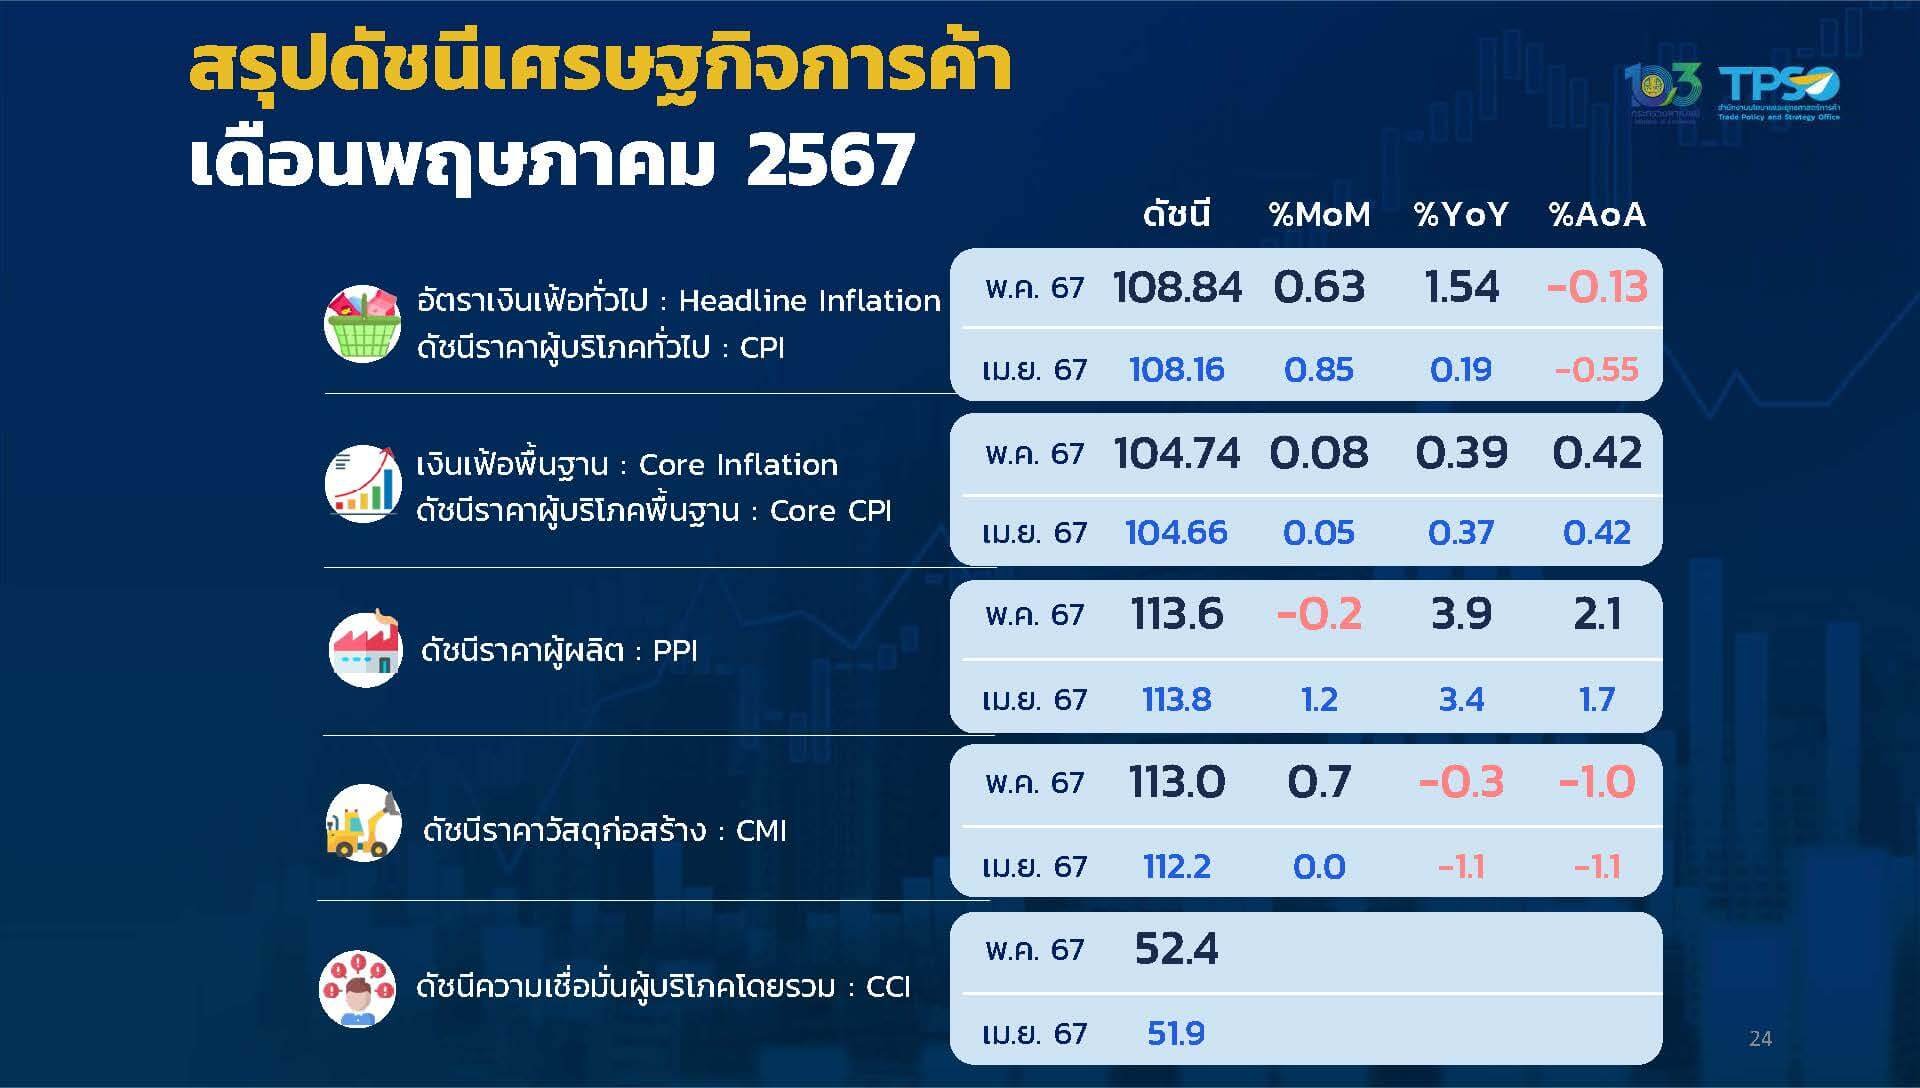 เศรษฐกิจไทยเดือนพฤษภาคม 2567 เงินเฟ้อทรงตัวต่ำ ความเชื่อมั่นผู้บริโภคฟื้นครั้งแรกในรอบ 6 เดือน